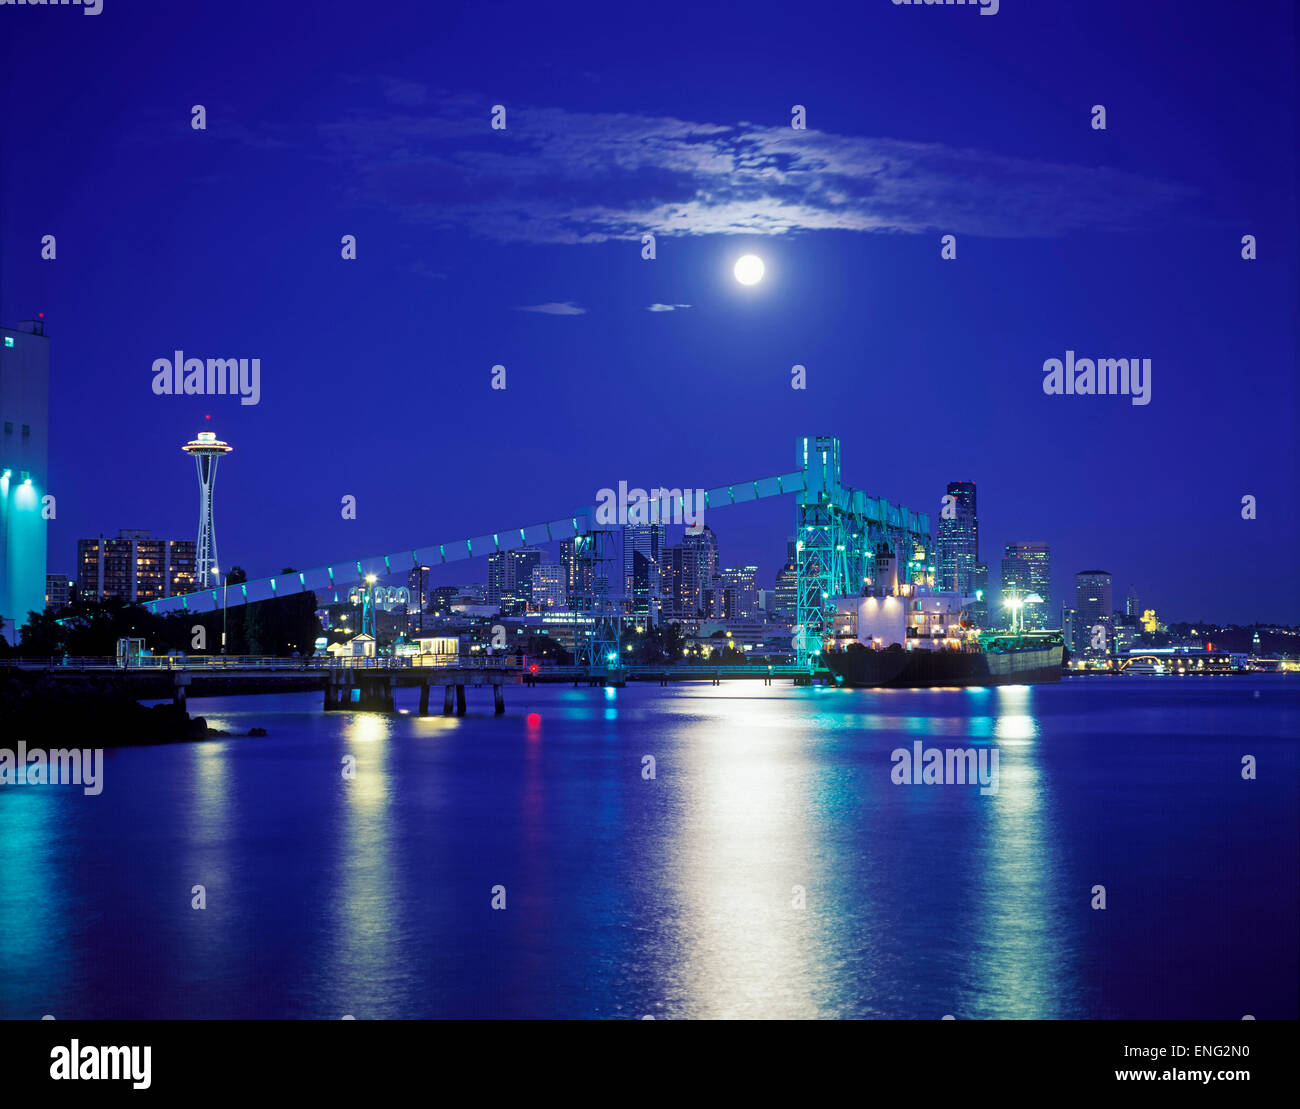 Moon over illuminated Seattle city skyline at night, Washington, United States Stock Photo